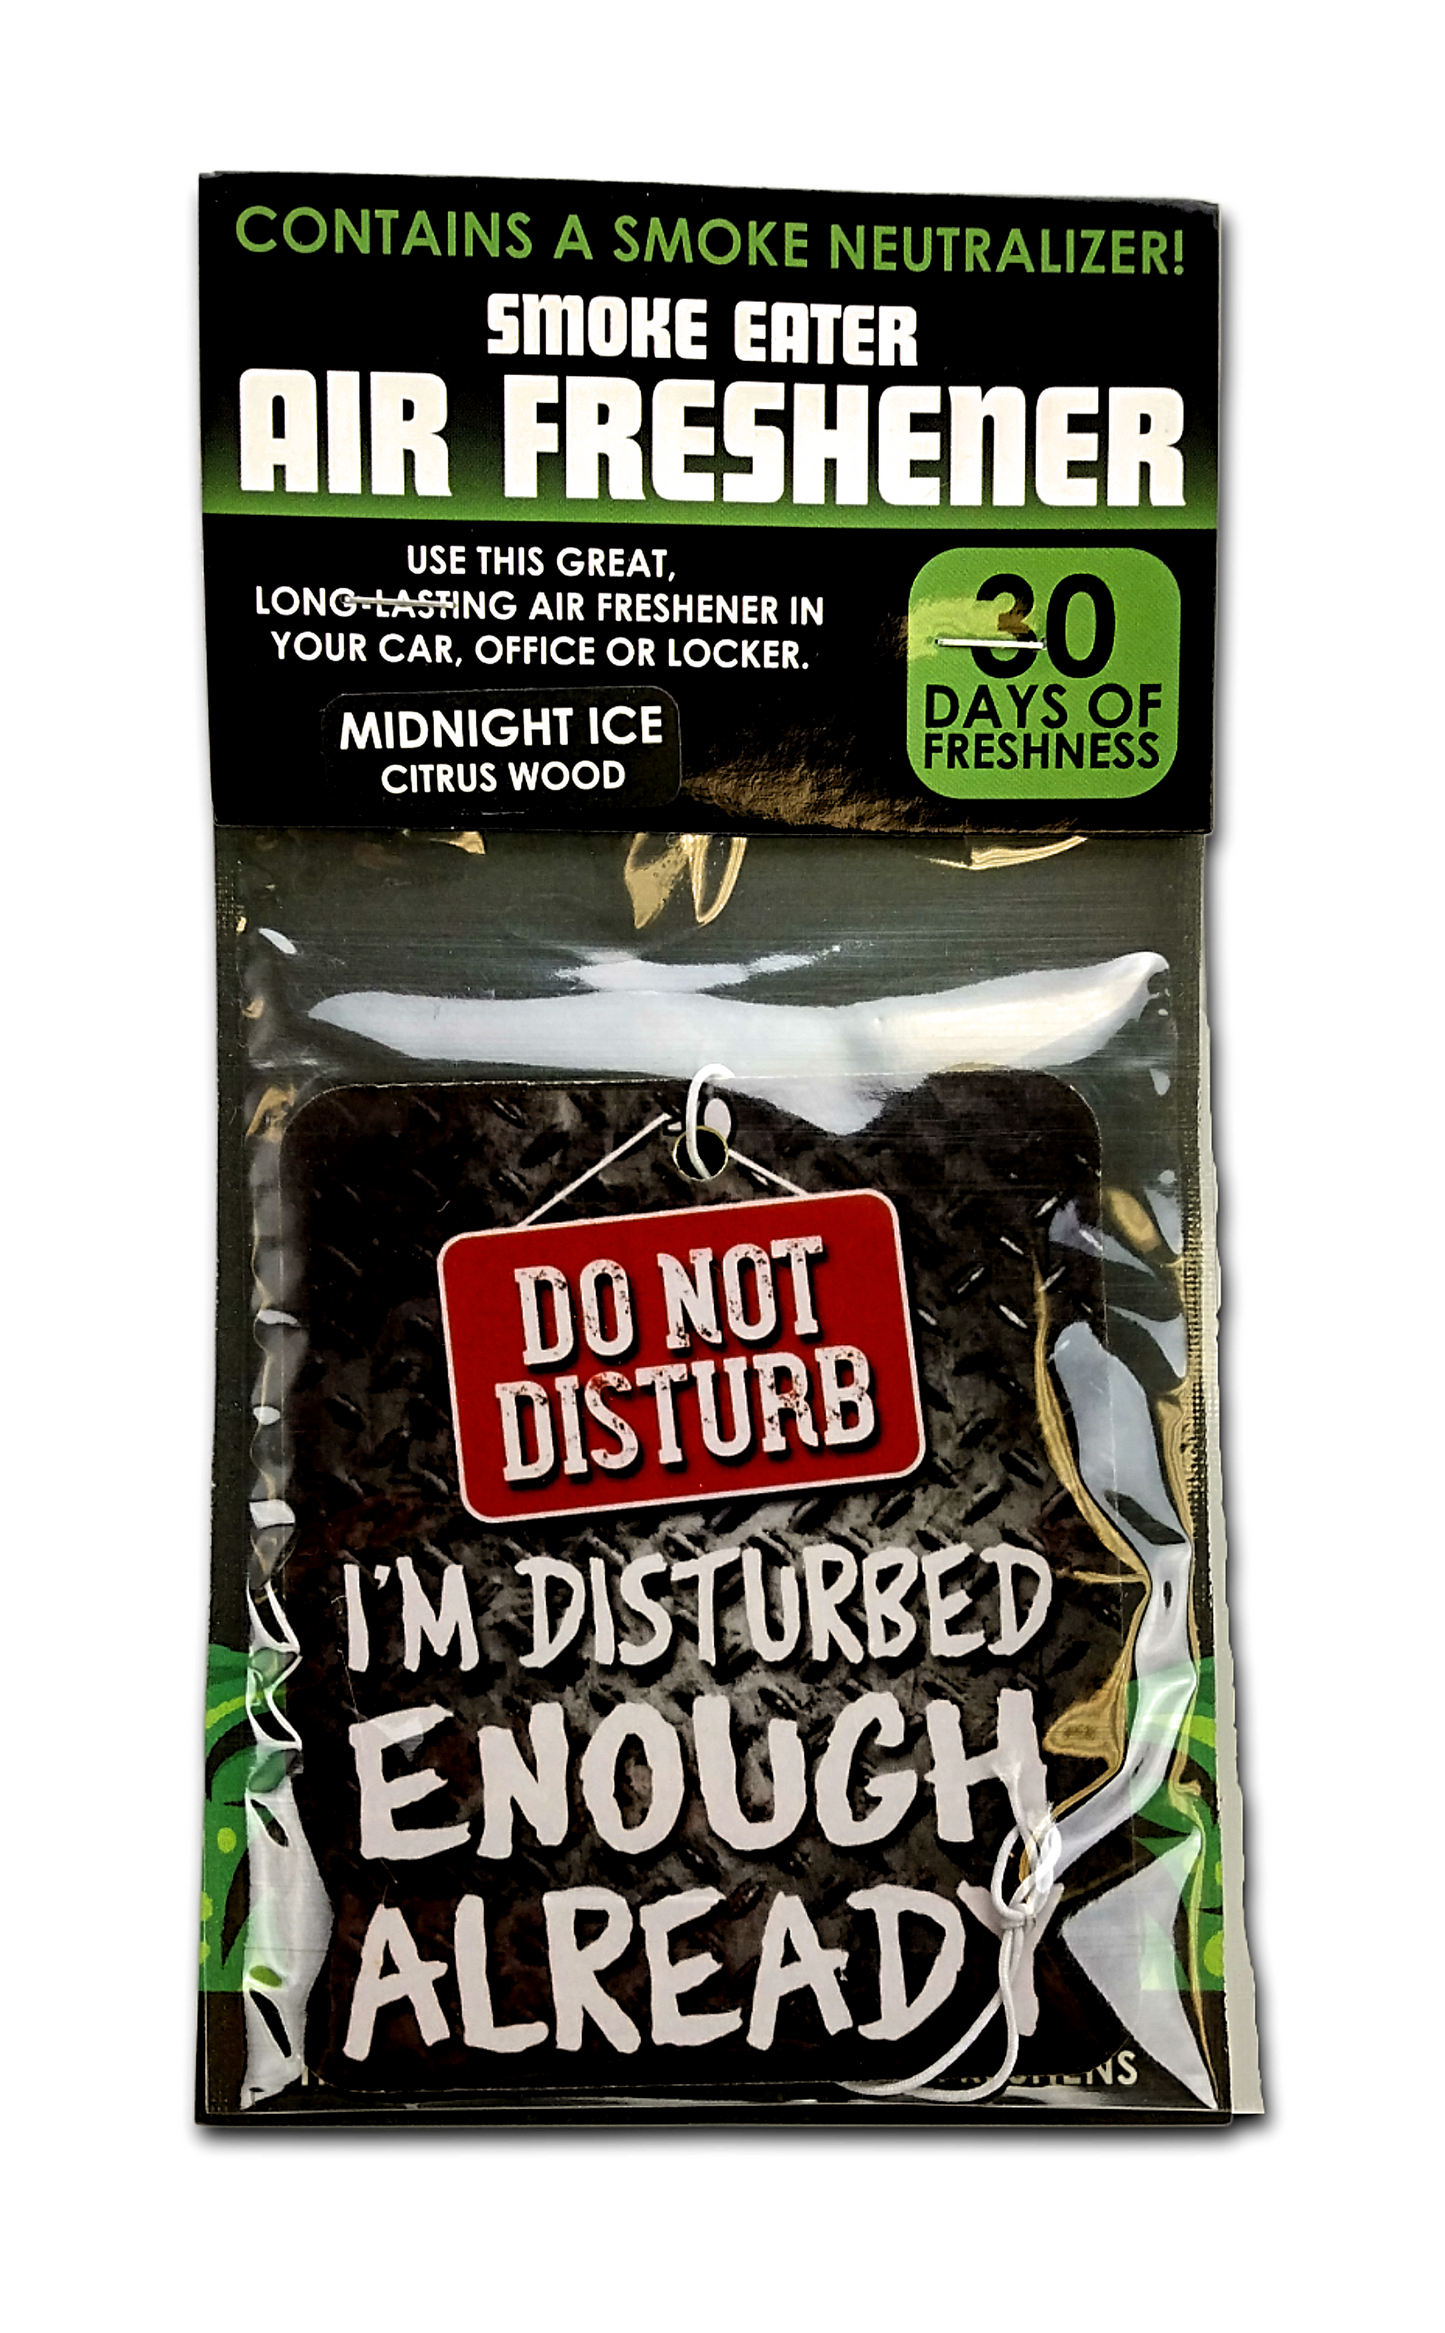 Smoke Eater Air Freshener